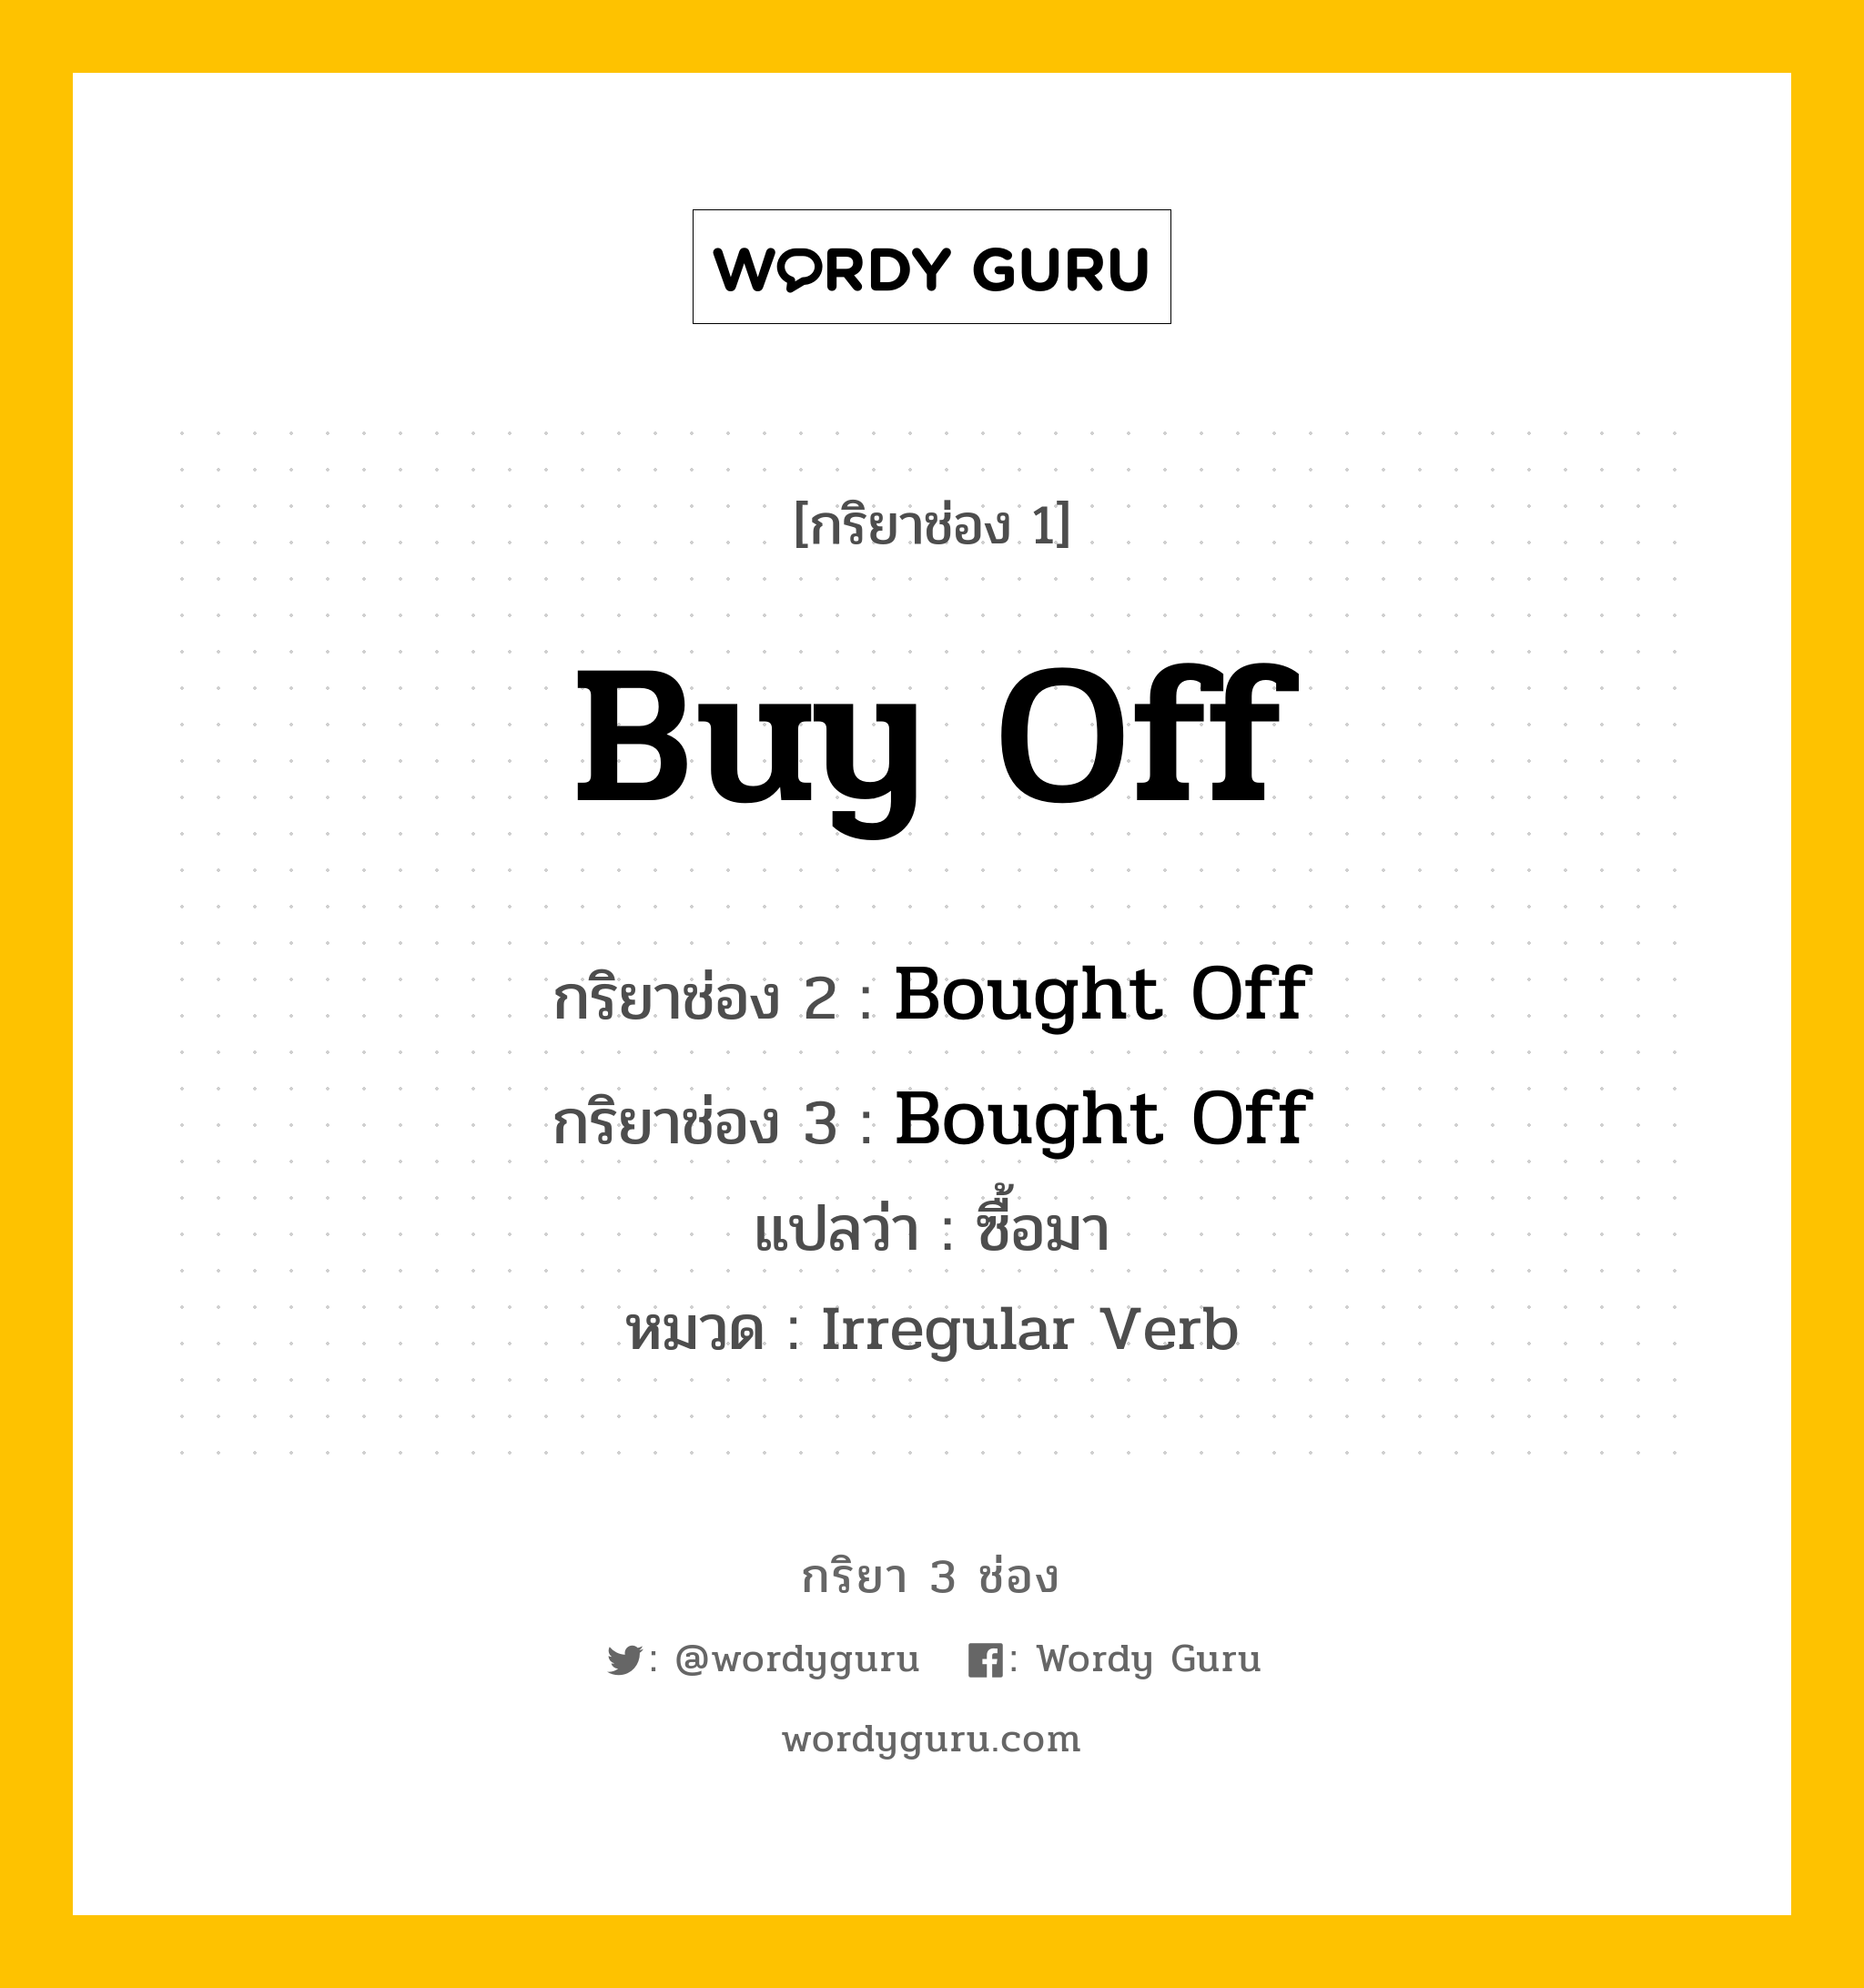 กริยา 3 ช่อง: Buy Off ช่อง 2 Buy Off ช่อง 3 คืออะไร, กริยาช่อง 1 Buy Off กริยาช่อง 2 Bought Off กริยาช่อง 3 Bought Off แปลว่า ซื้อมา หมวด Irregular Verb หมวด Irregular Verb